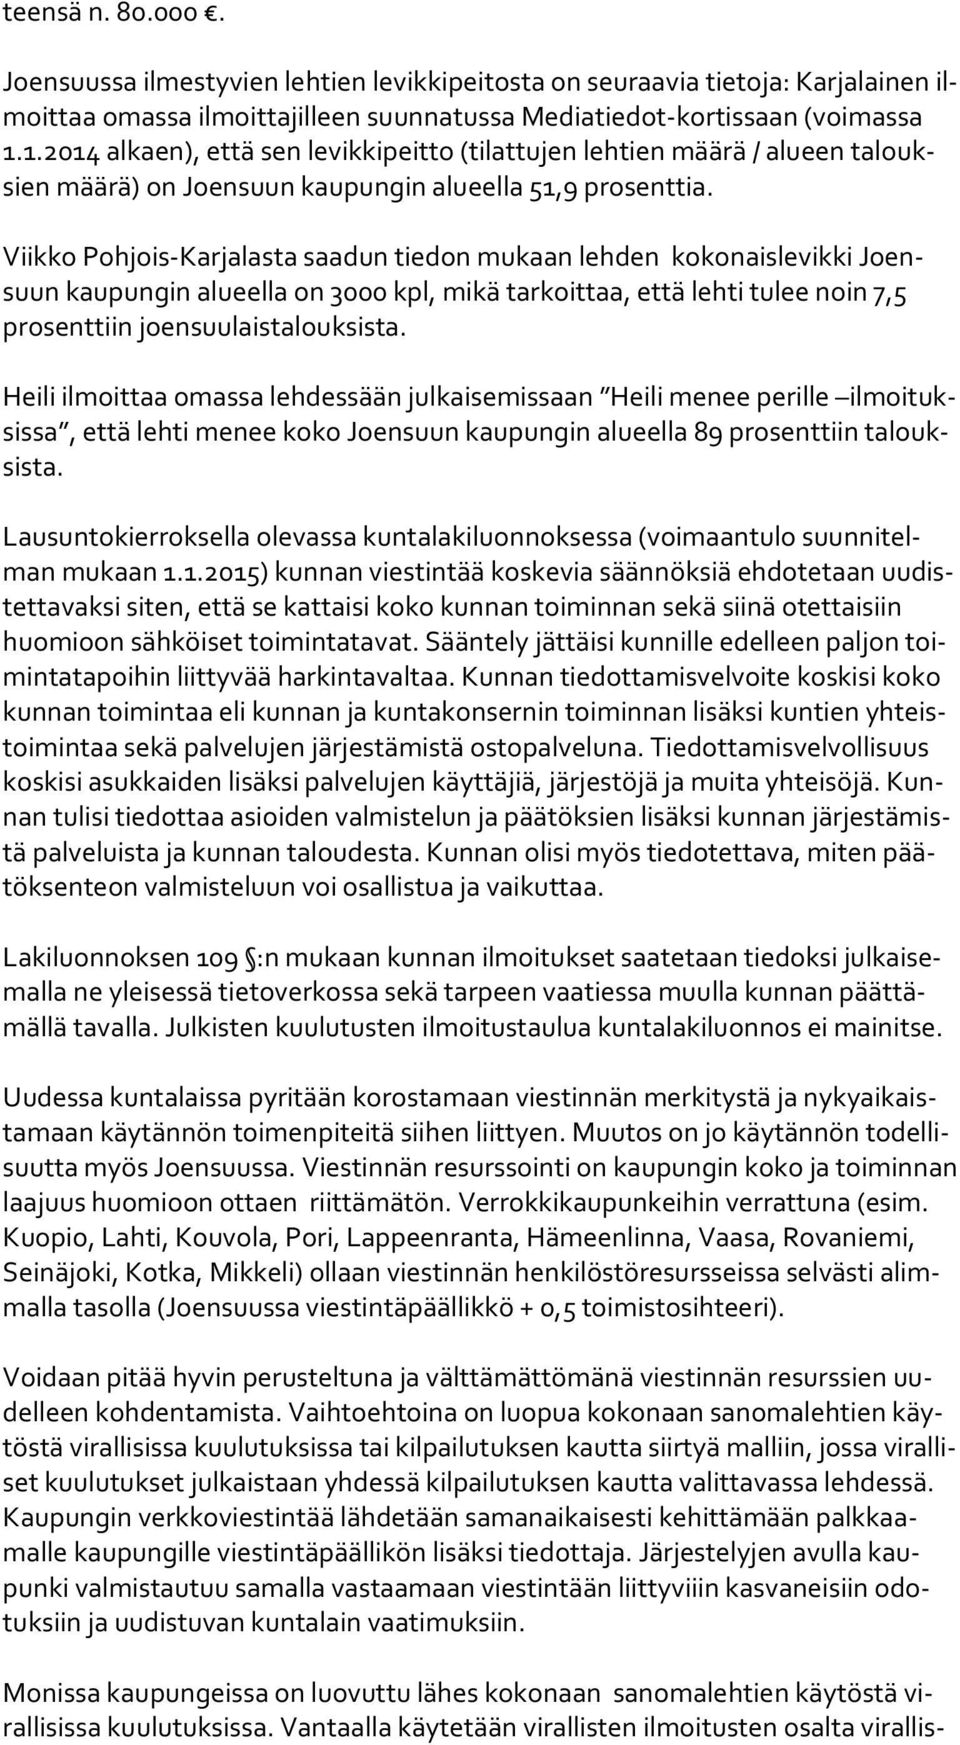 Viikko Pohjois-Karjalasta saadun tiedon mukaan lehden kokonaislevikki Joensuun kaupungin alueella on 3000 kpl, mikä tarkoittaa, että lehti tulee noin 7,5 pro sent tiin joensuulaistalouksista.